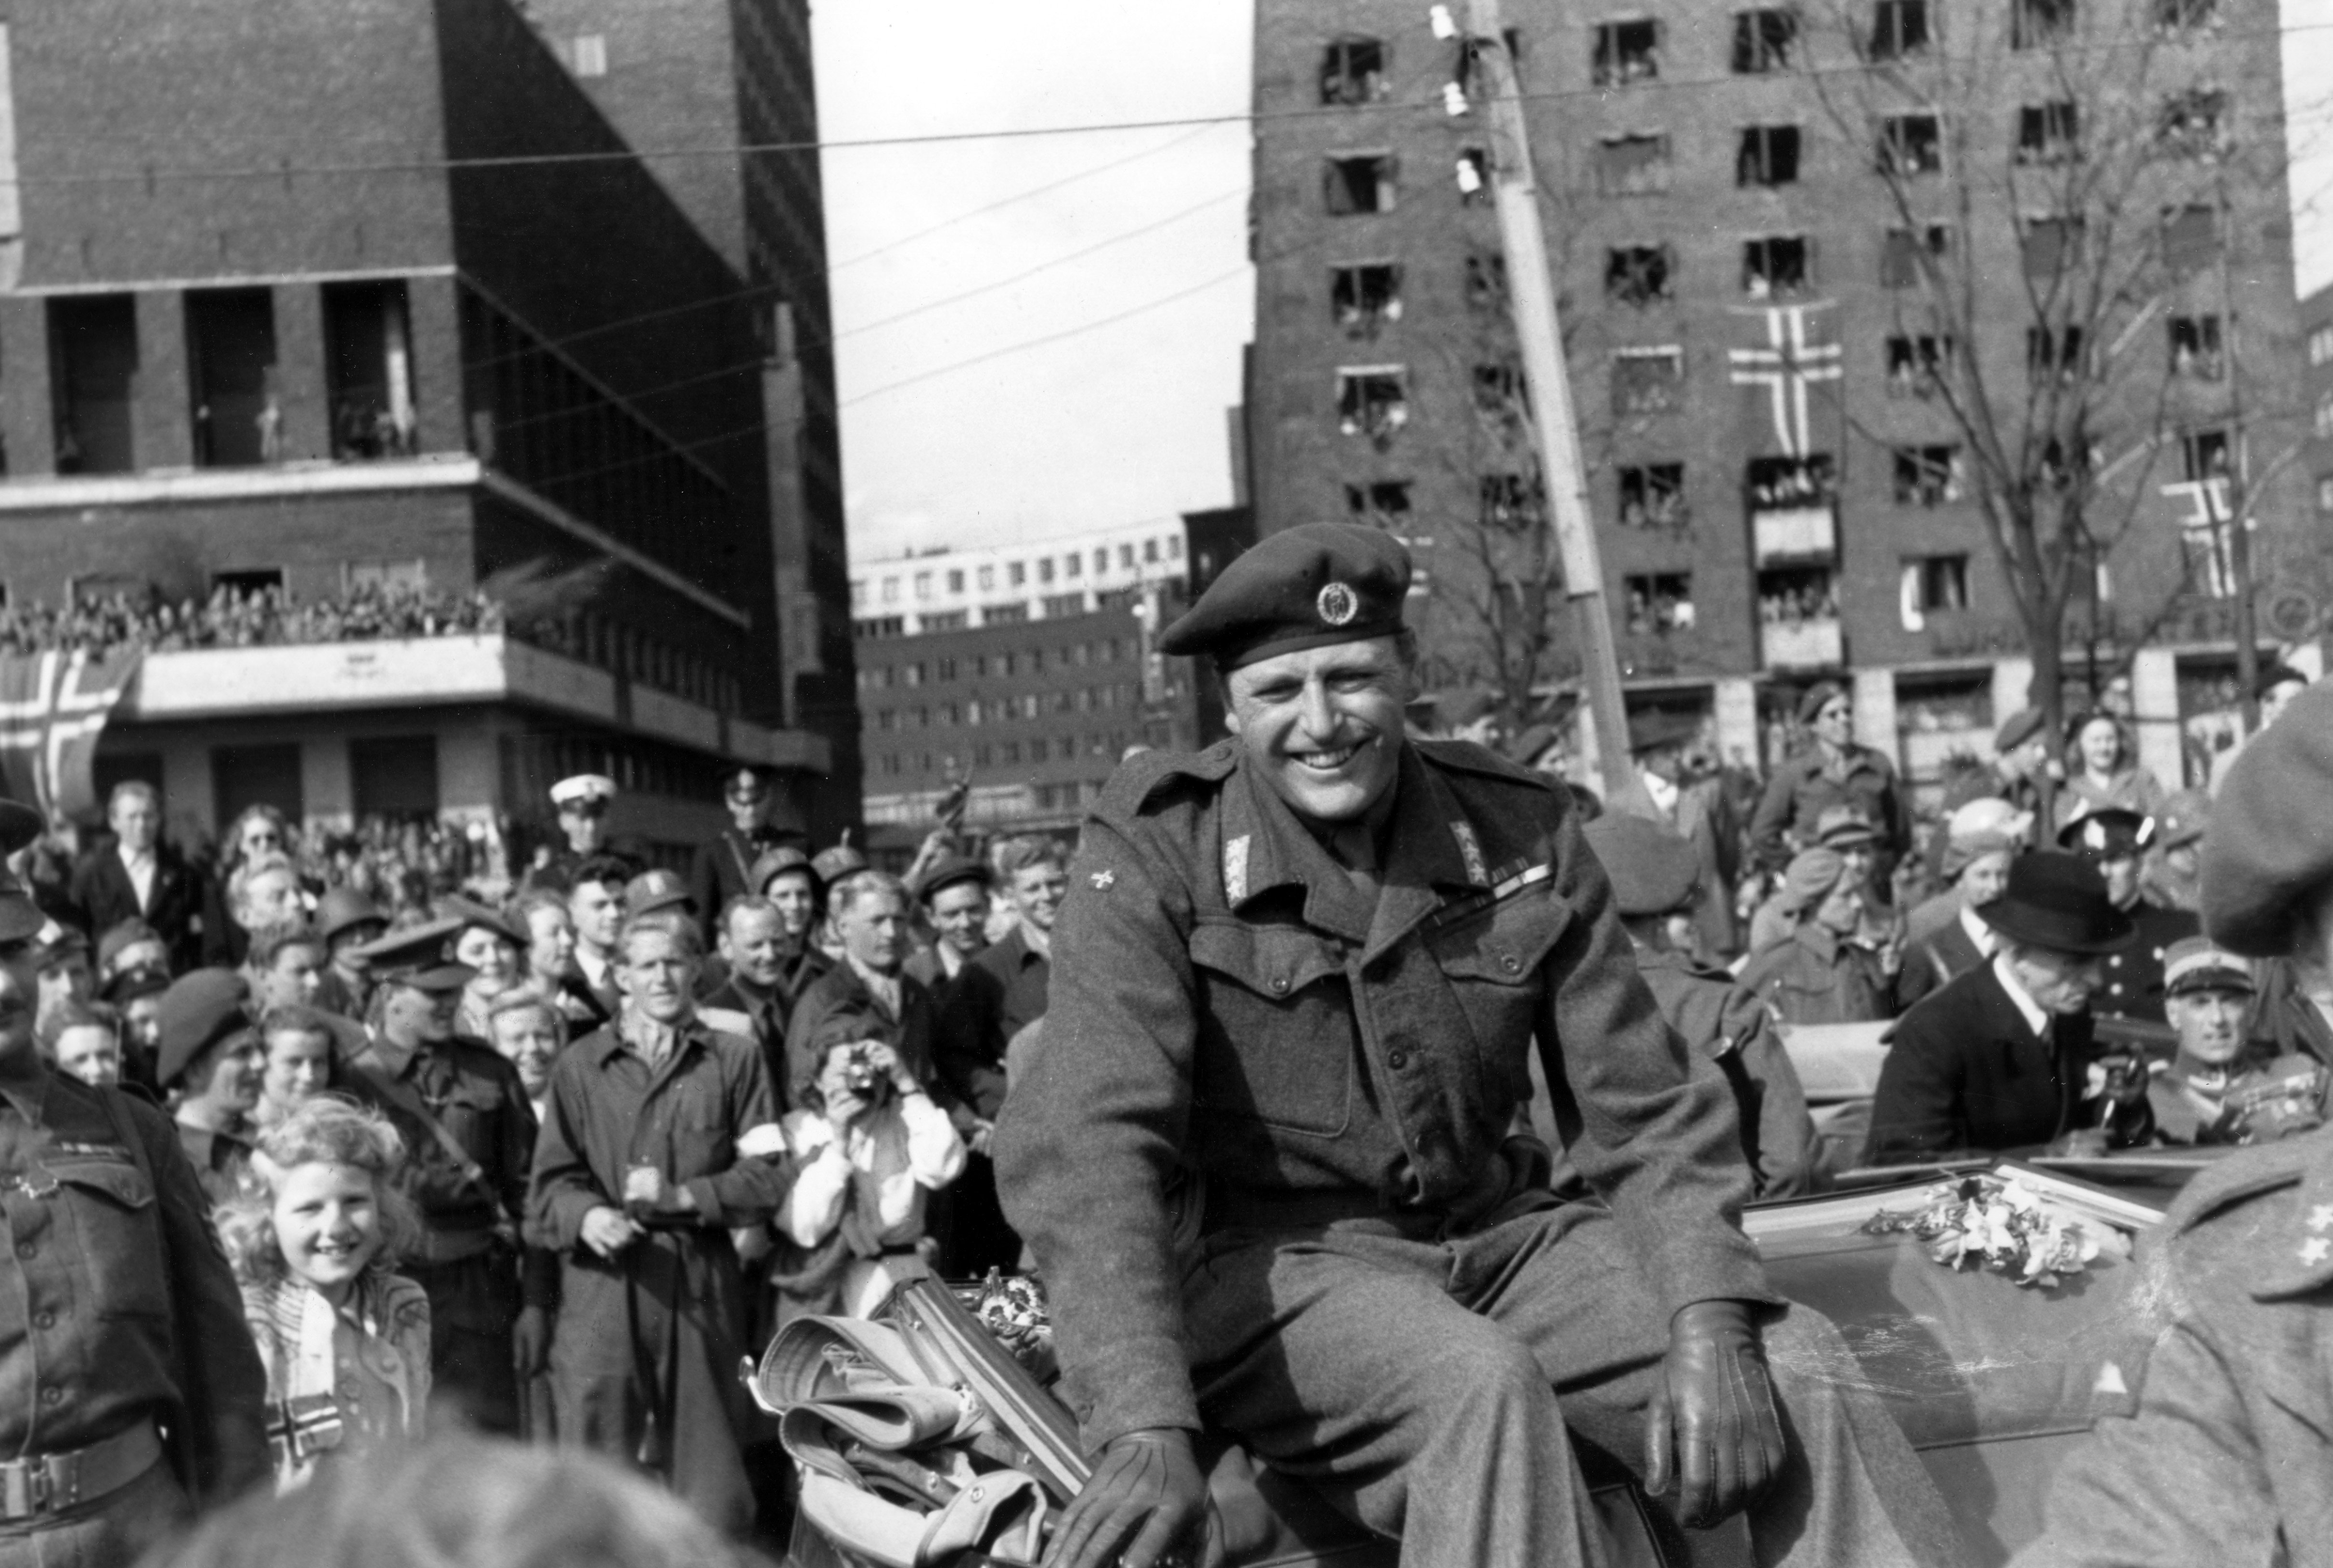 Kronprins Olav får ein varm velkomst då han kjem tilbake til Noreg etter krigen 13. mai 1945. Han blir møtt av store folkemengder på Rådhusplassen.